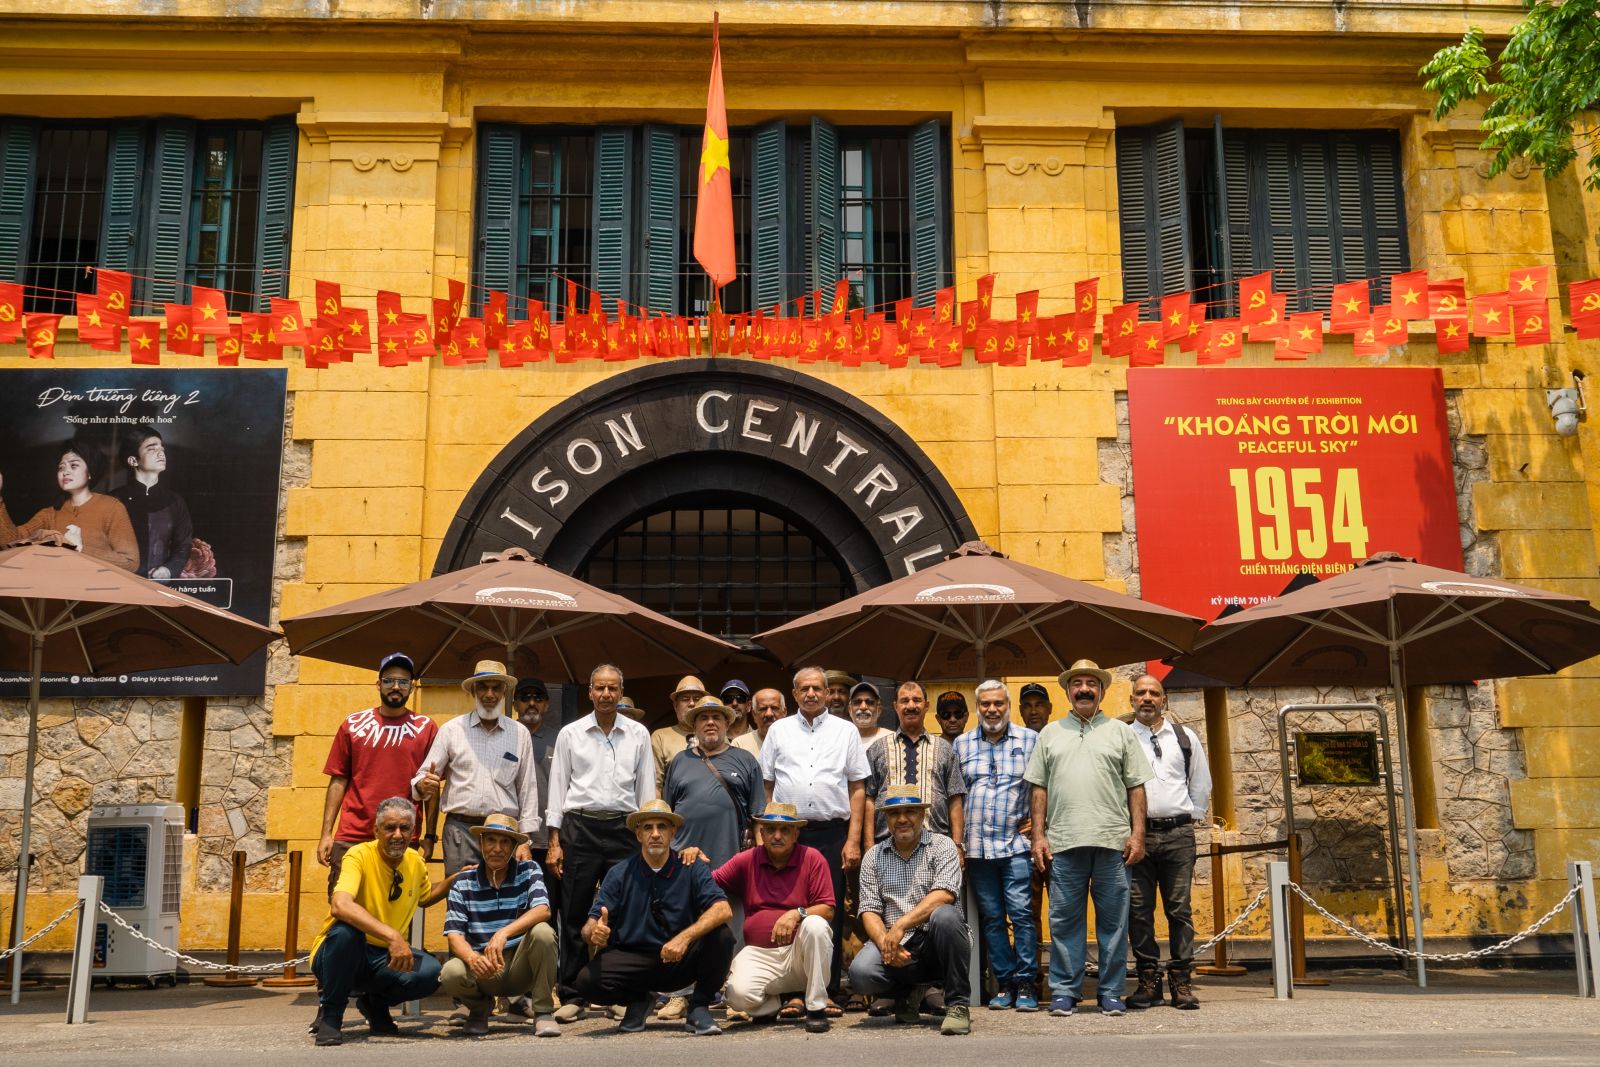 جولة استكشف هانوي مع مجموعة من السياح العمانيين: استمتع بتجربة التاريخ والثقافة الفريدة